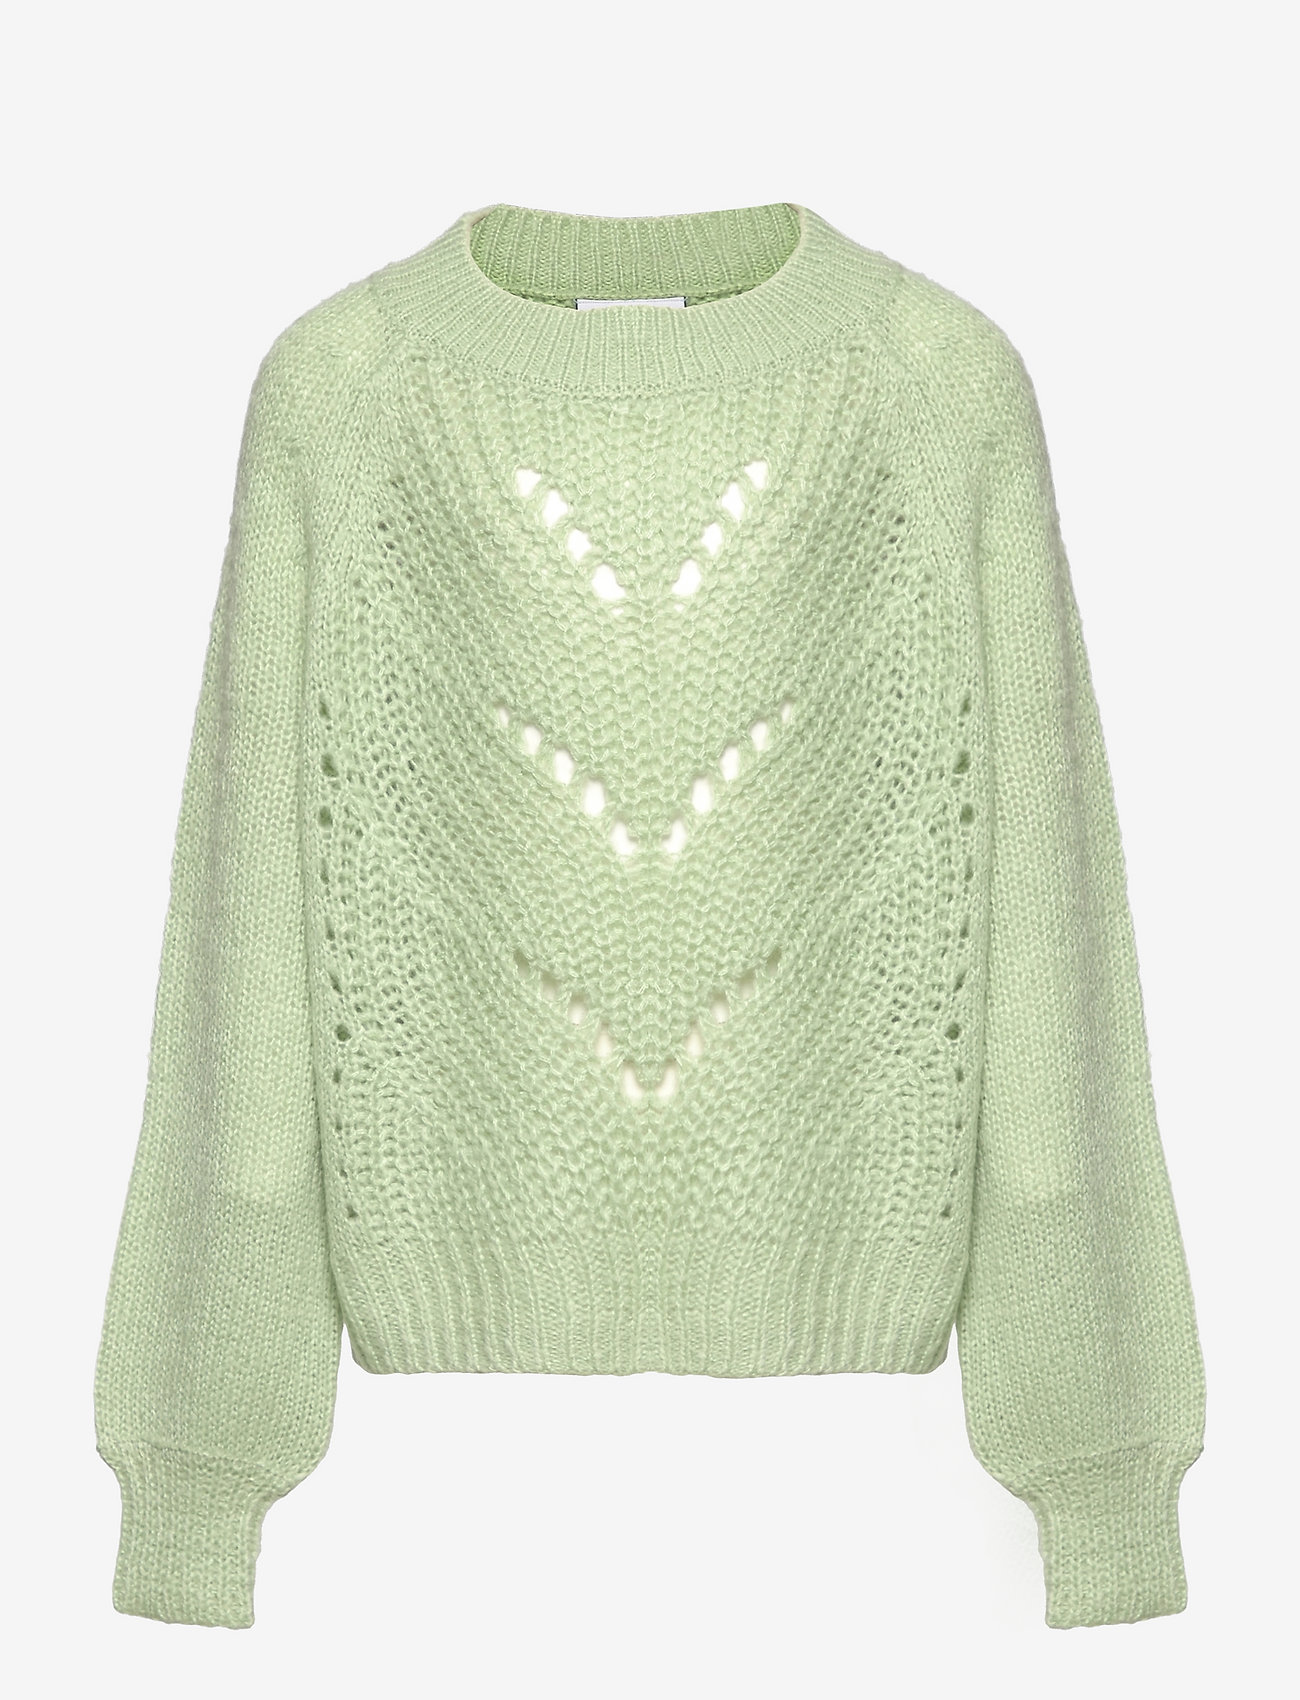 Grunt - Mall Knit - jumpers - light green - 0